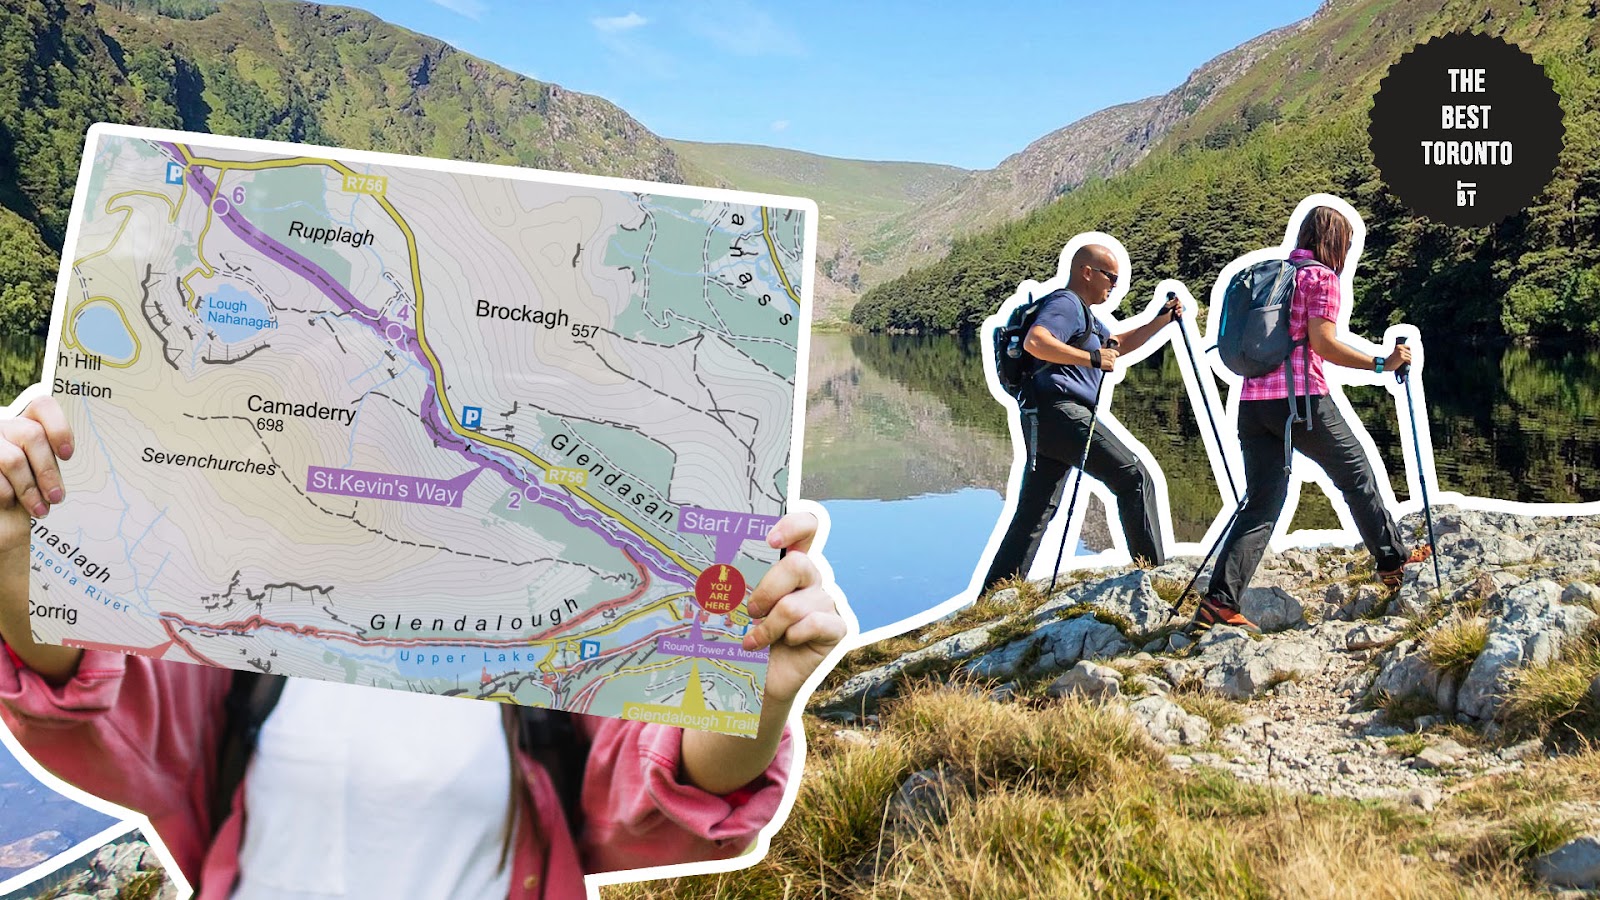 Go for an Immersive Hike in Glendalough